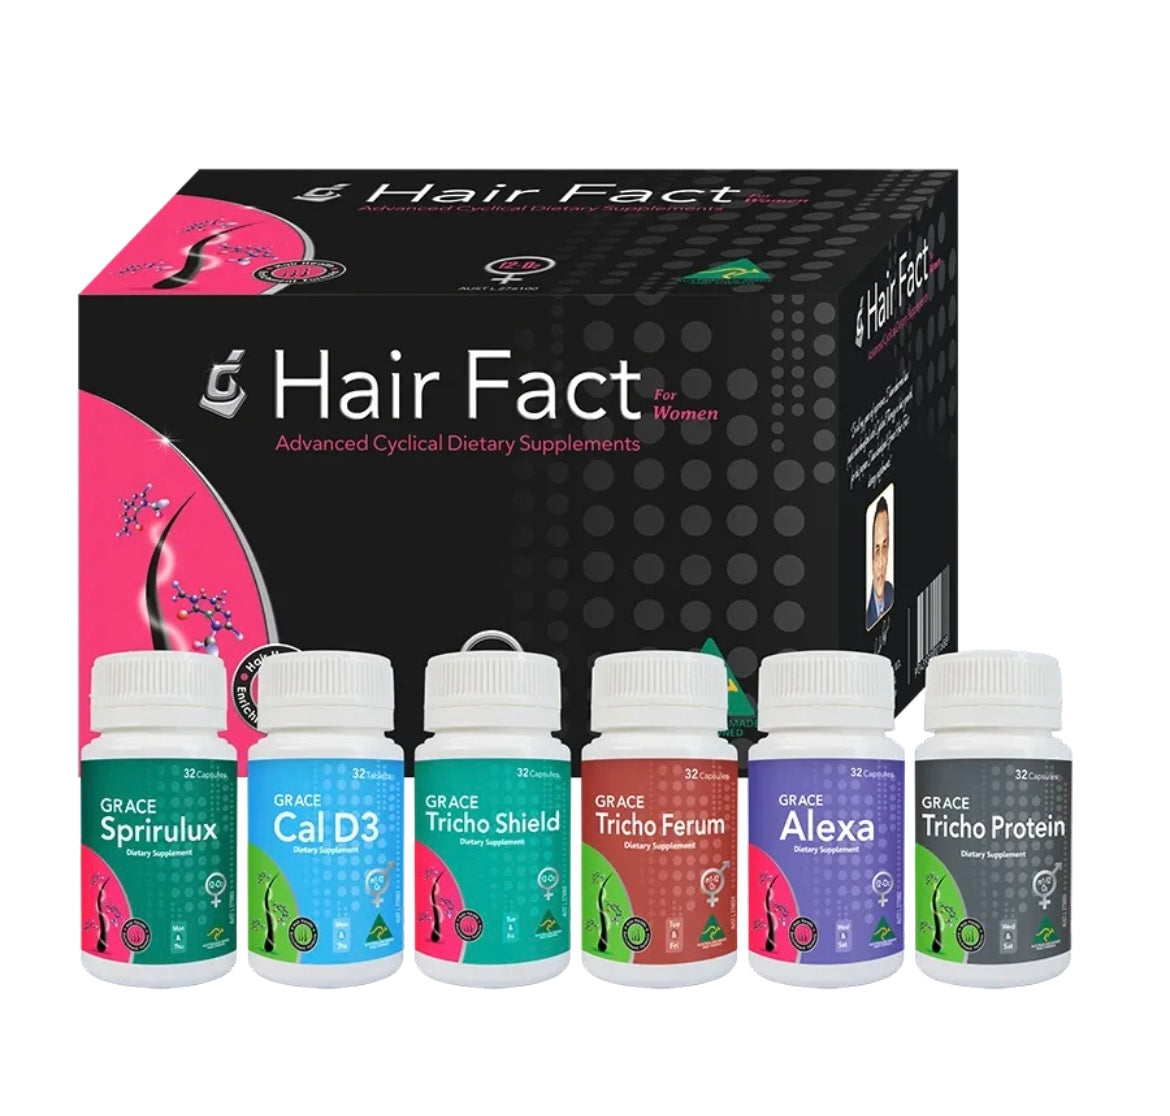 Hair Fact Supplements